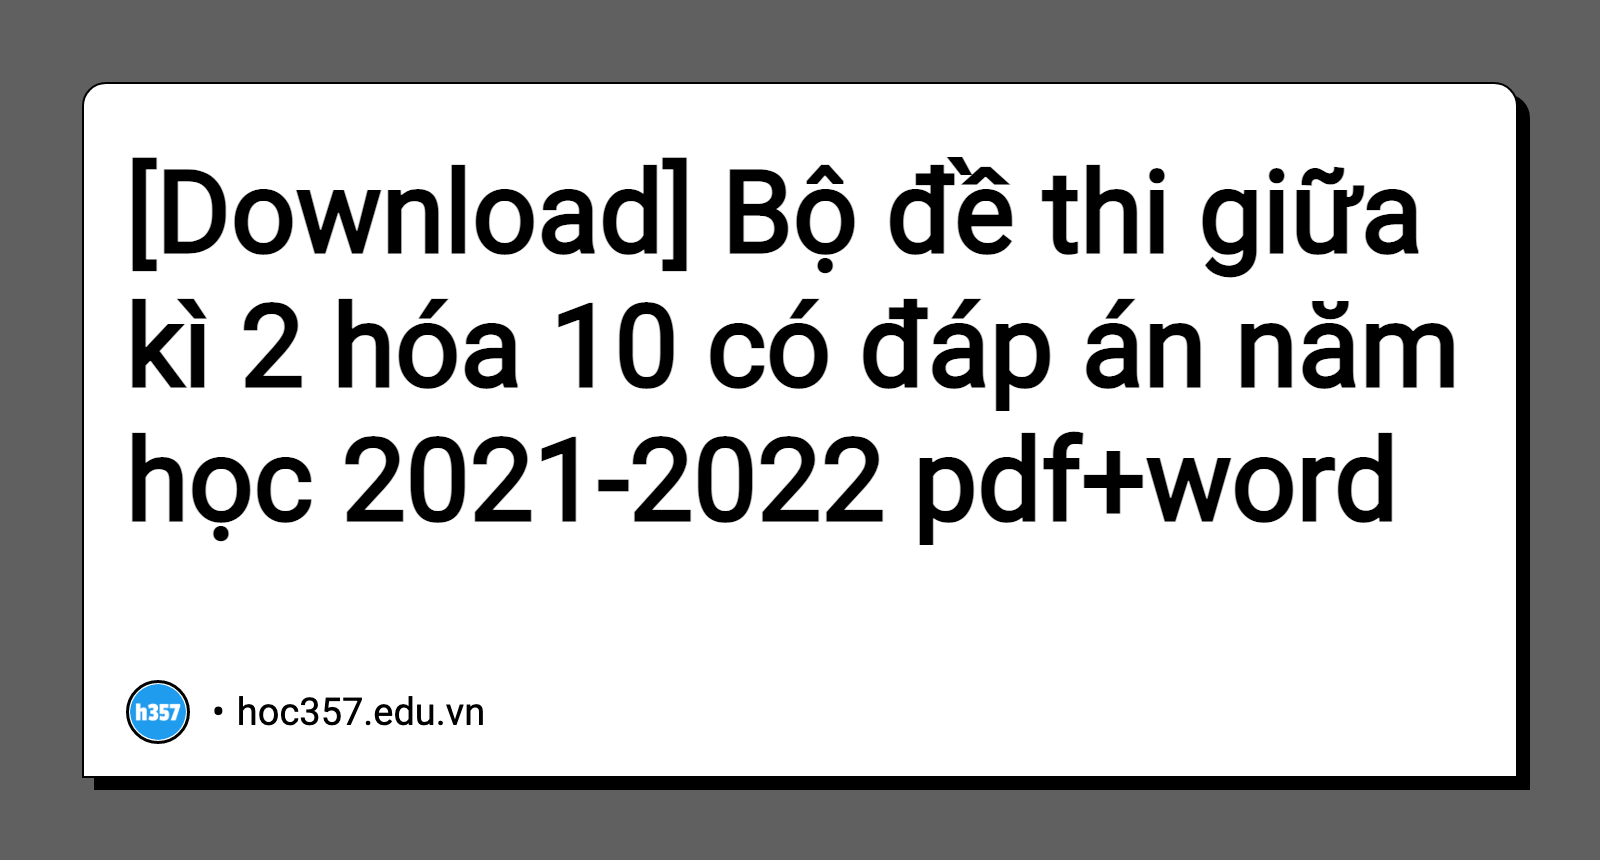 Hình minh họa Bộ đề thi giữa kì 2 hóa 10 có đáp án năm học 2021-2022